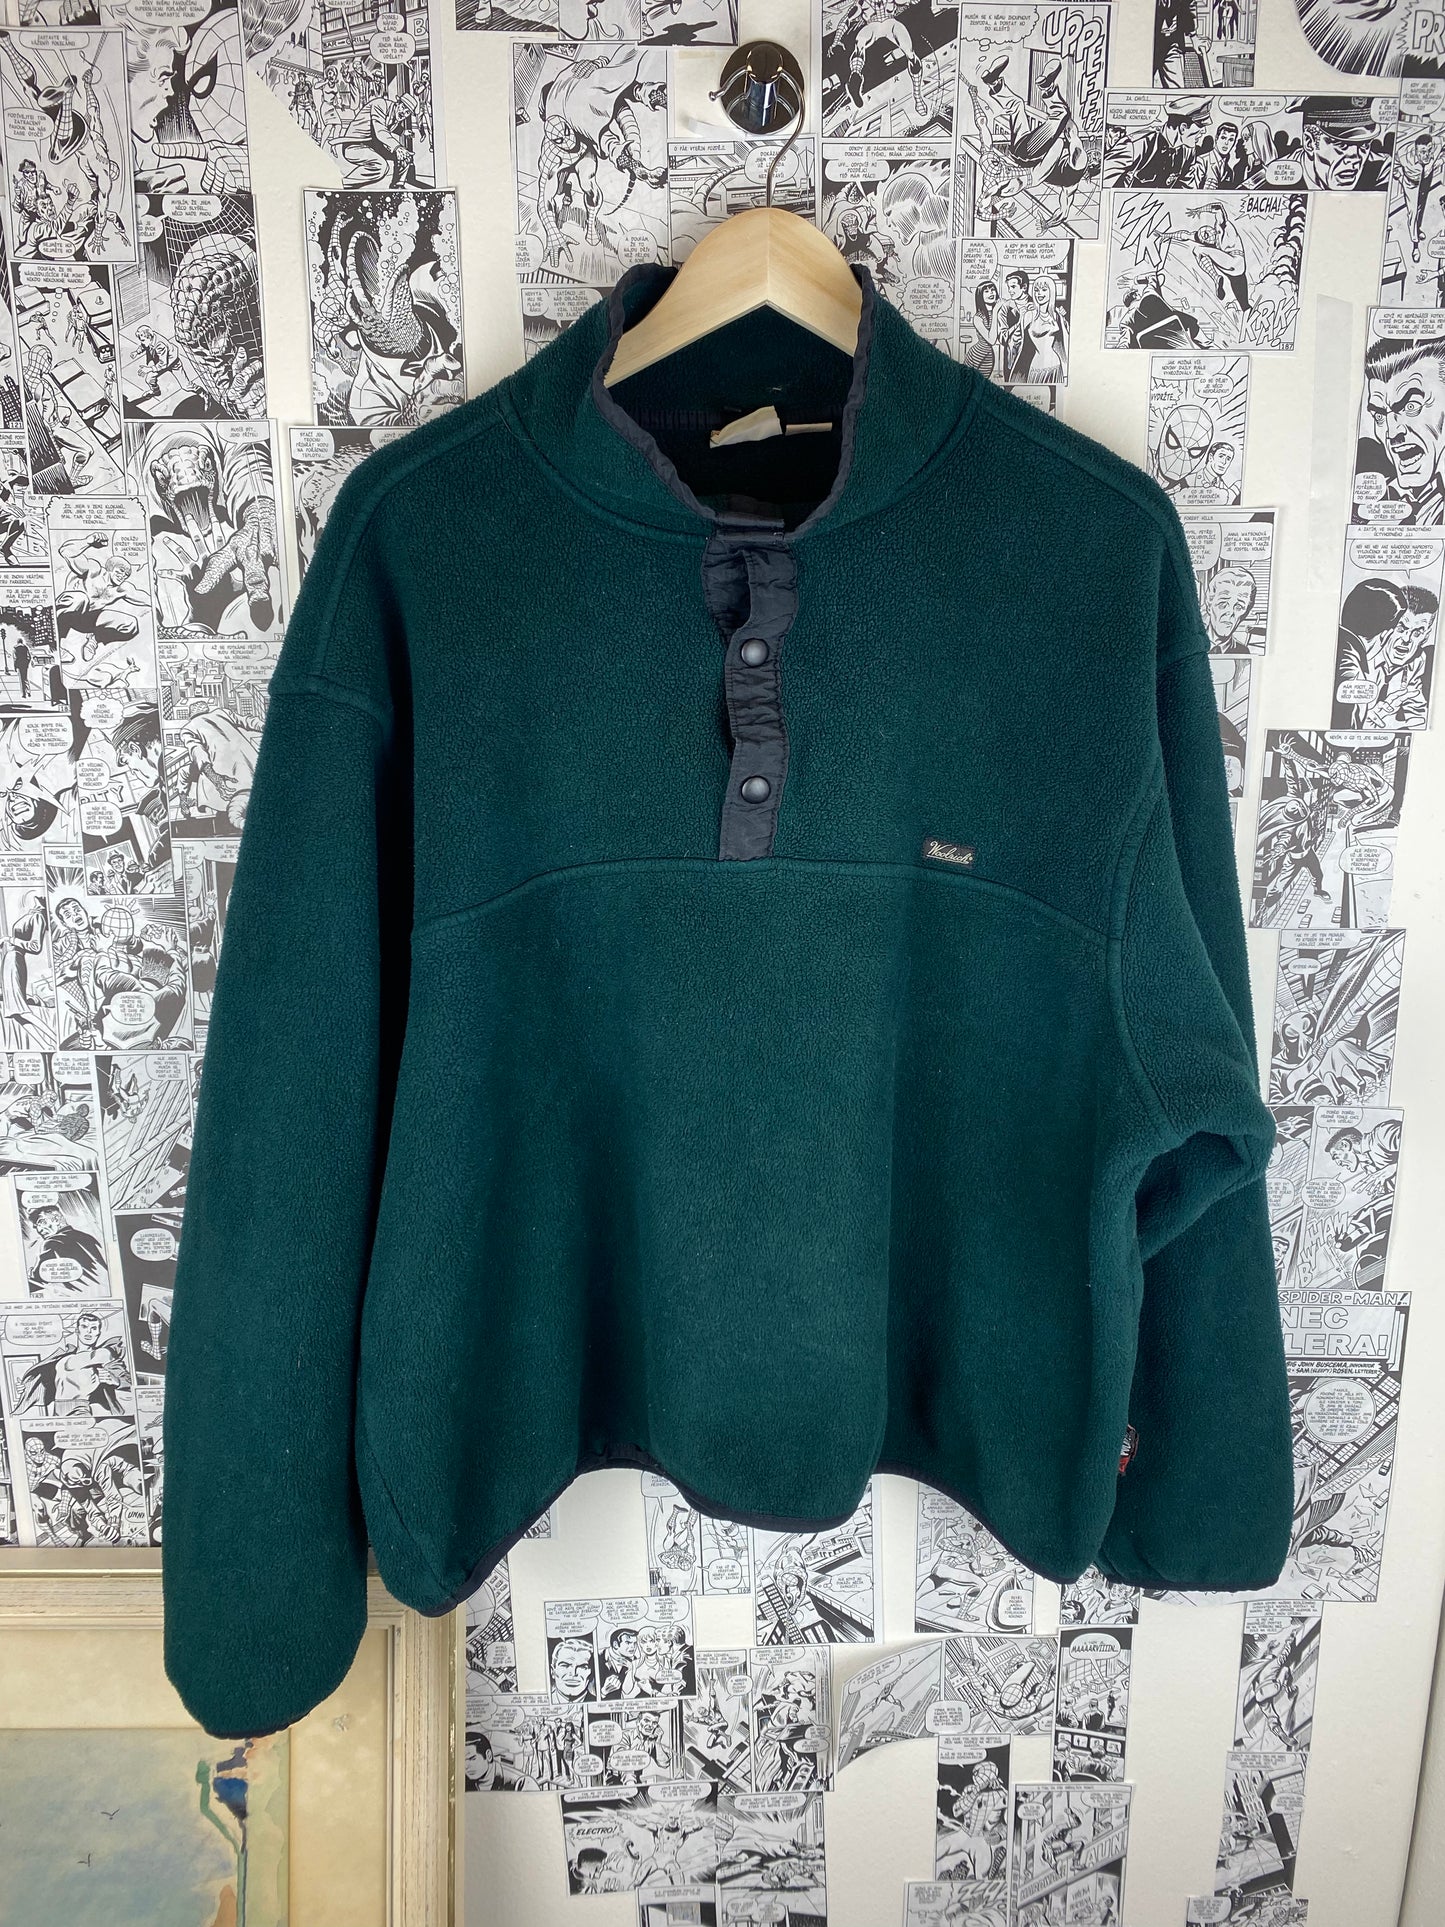 Vintage Woolrich Fleece Crewneck - size XL